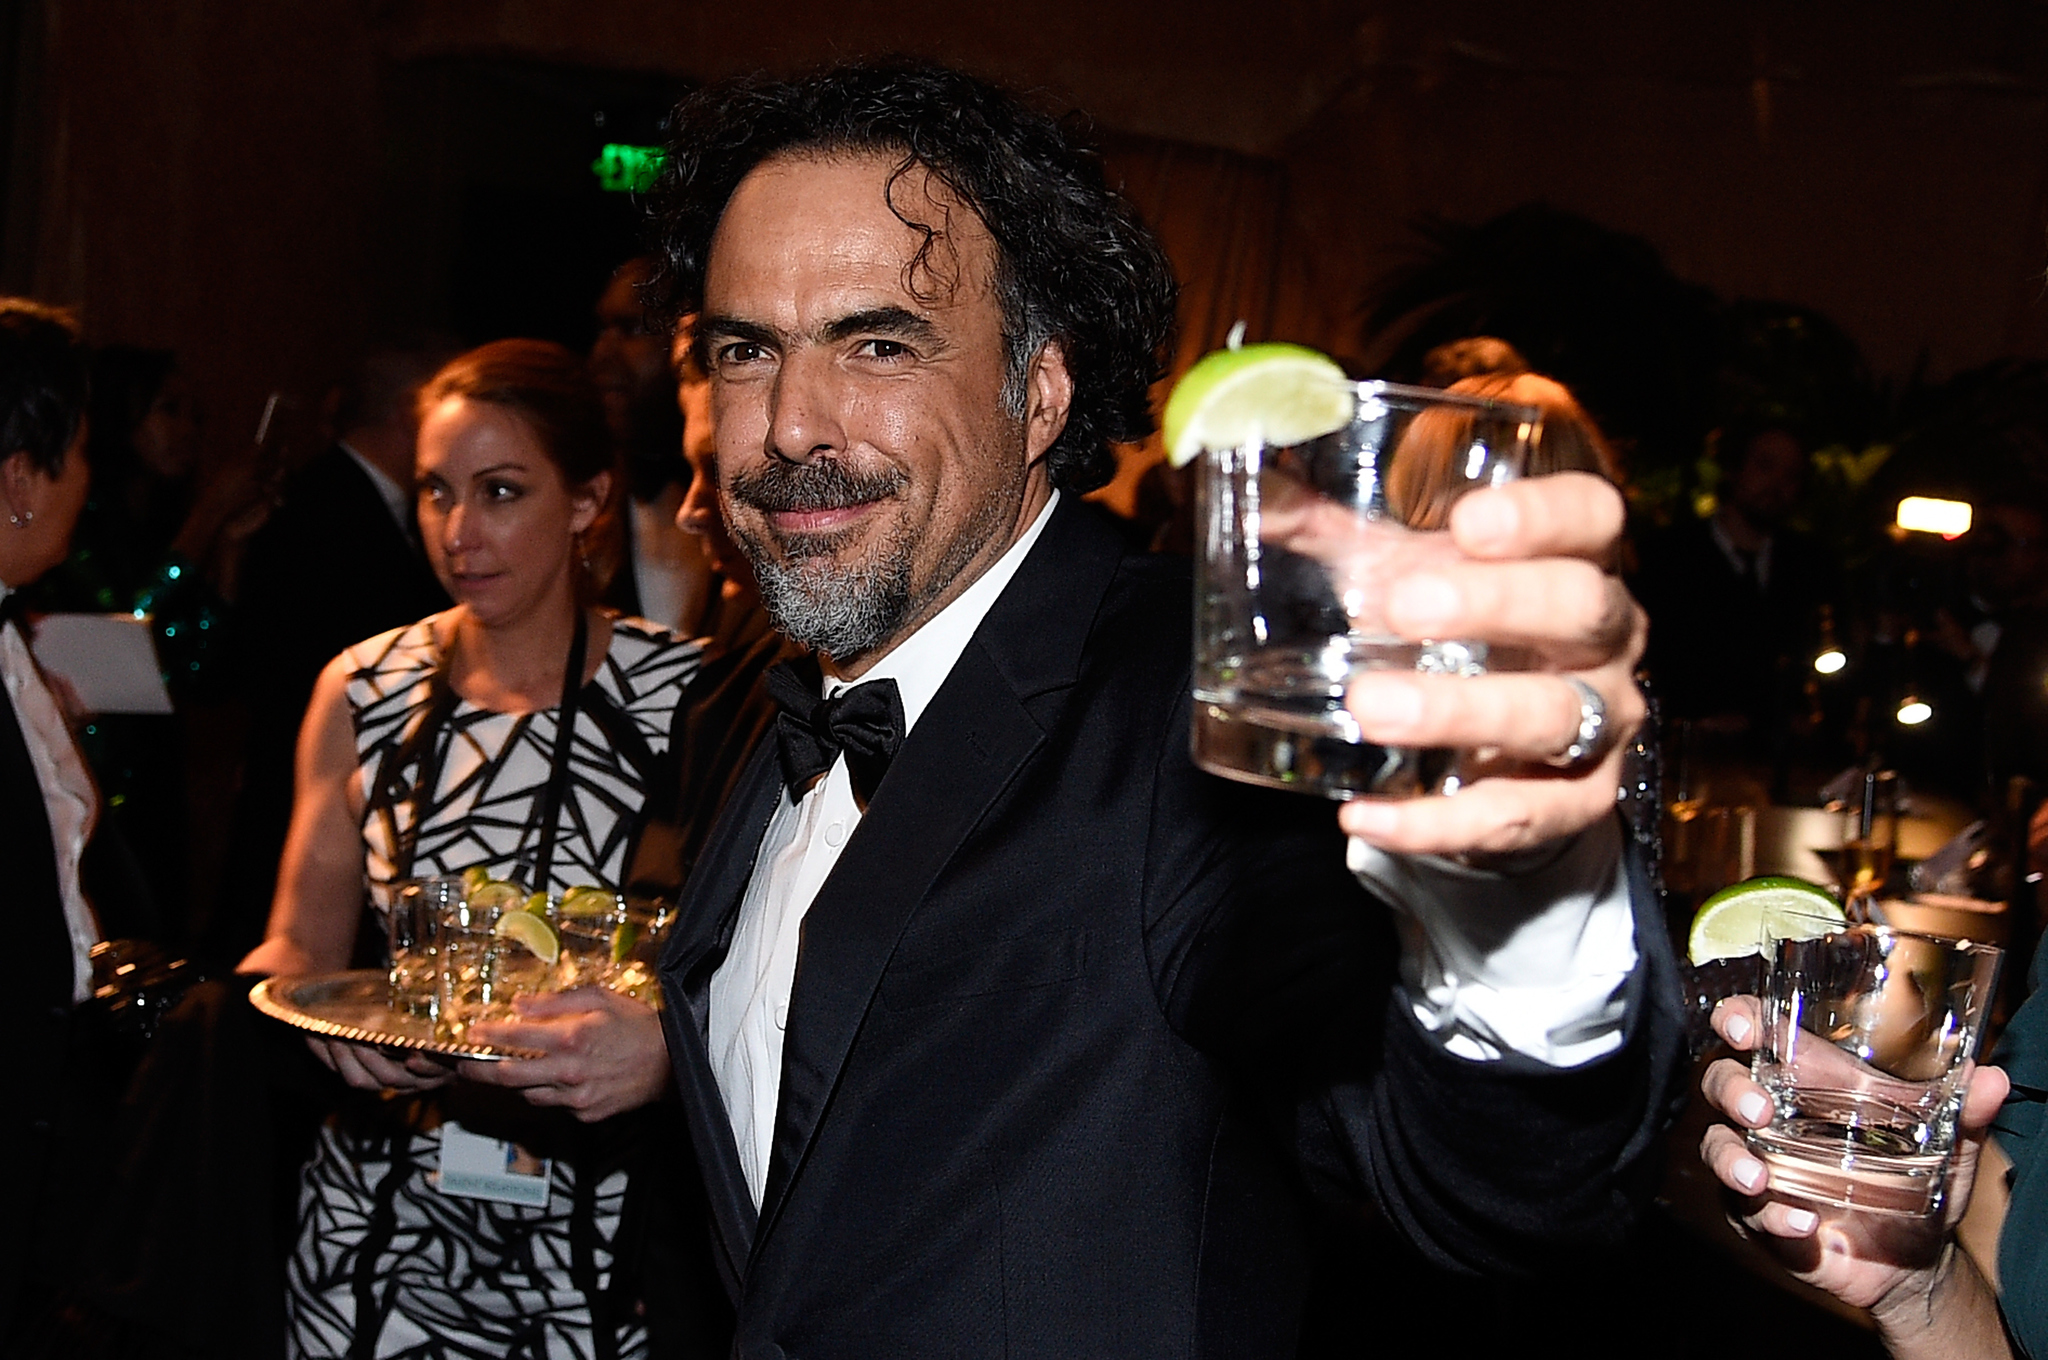 Alejandro González Iñárritu at event of The Oscars (2015)